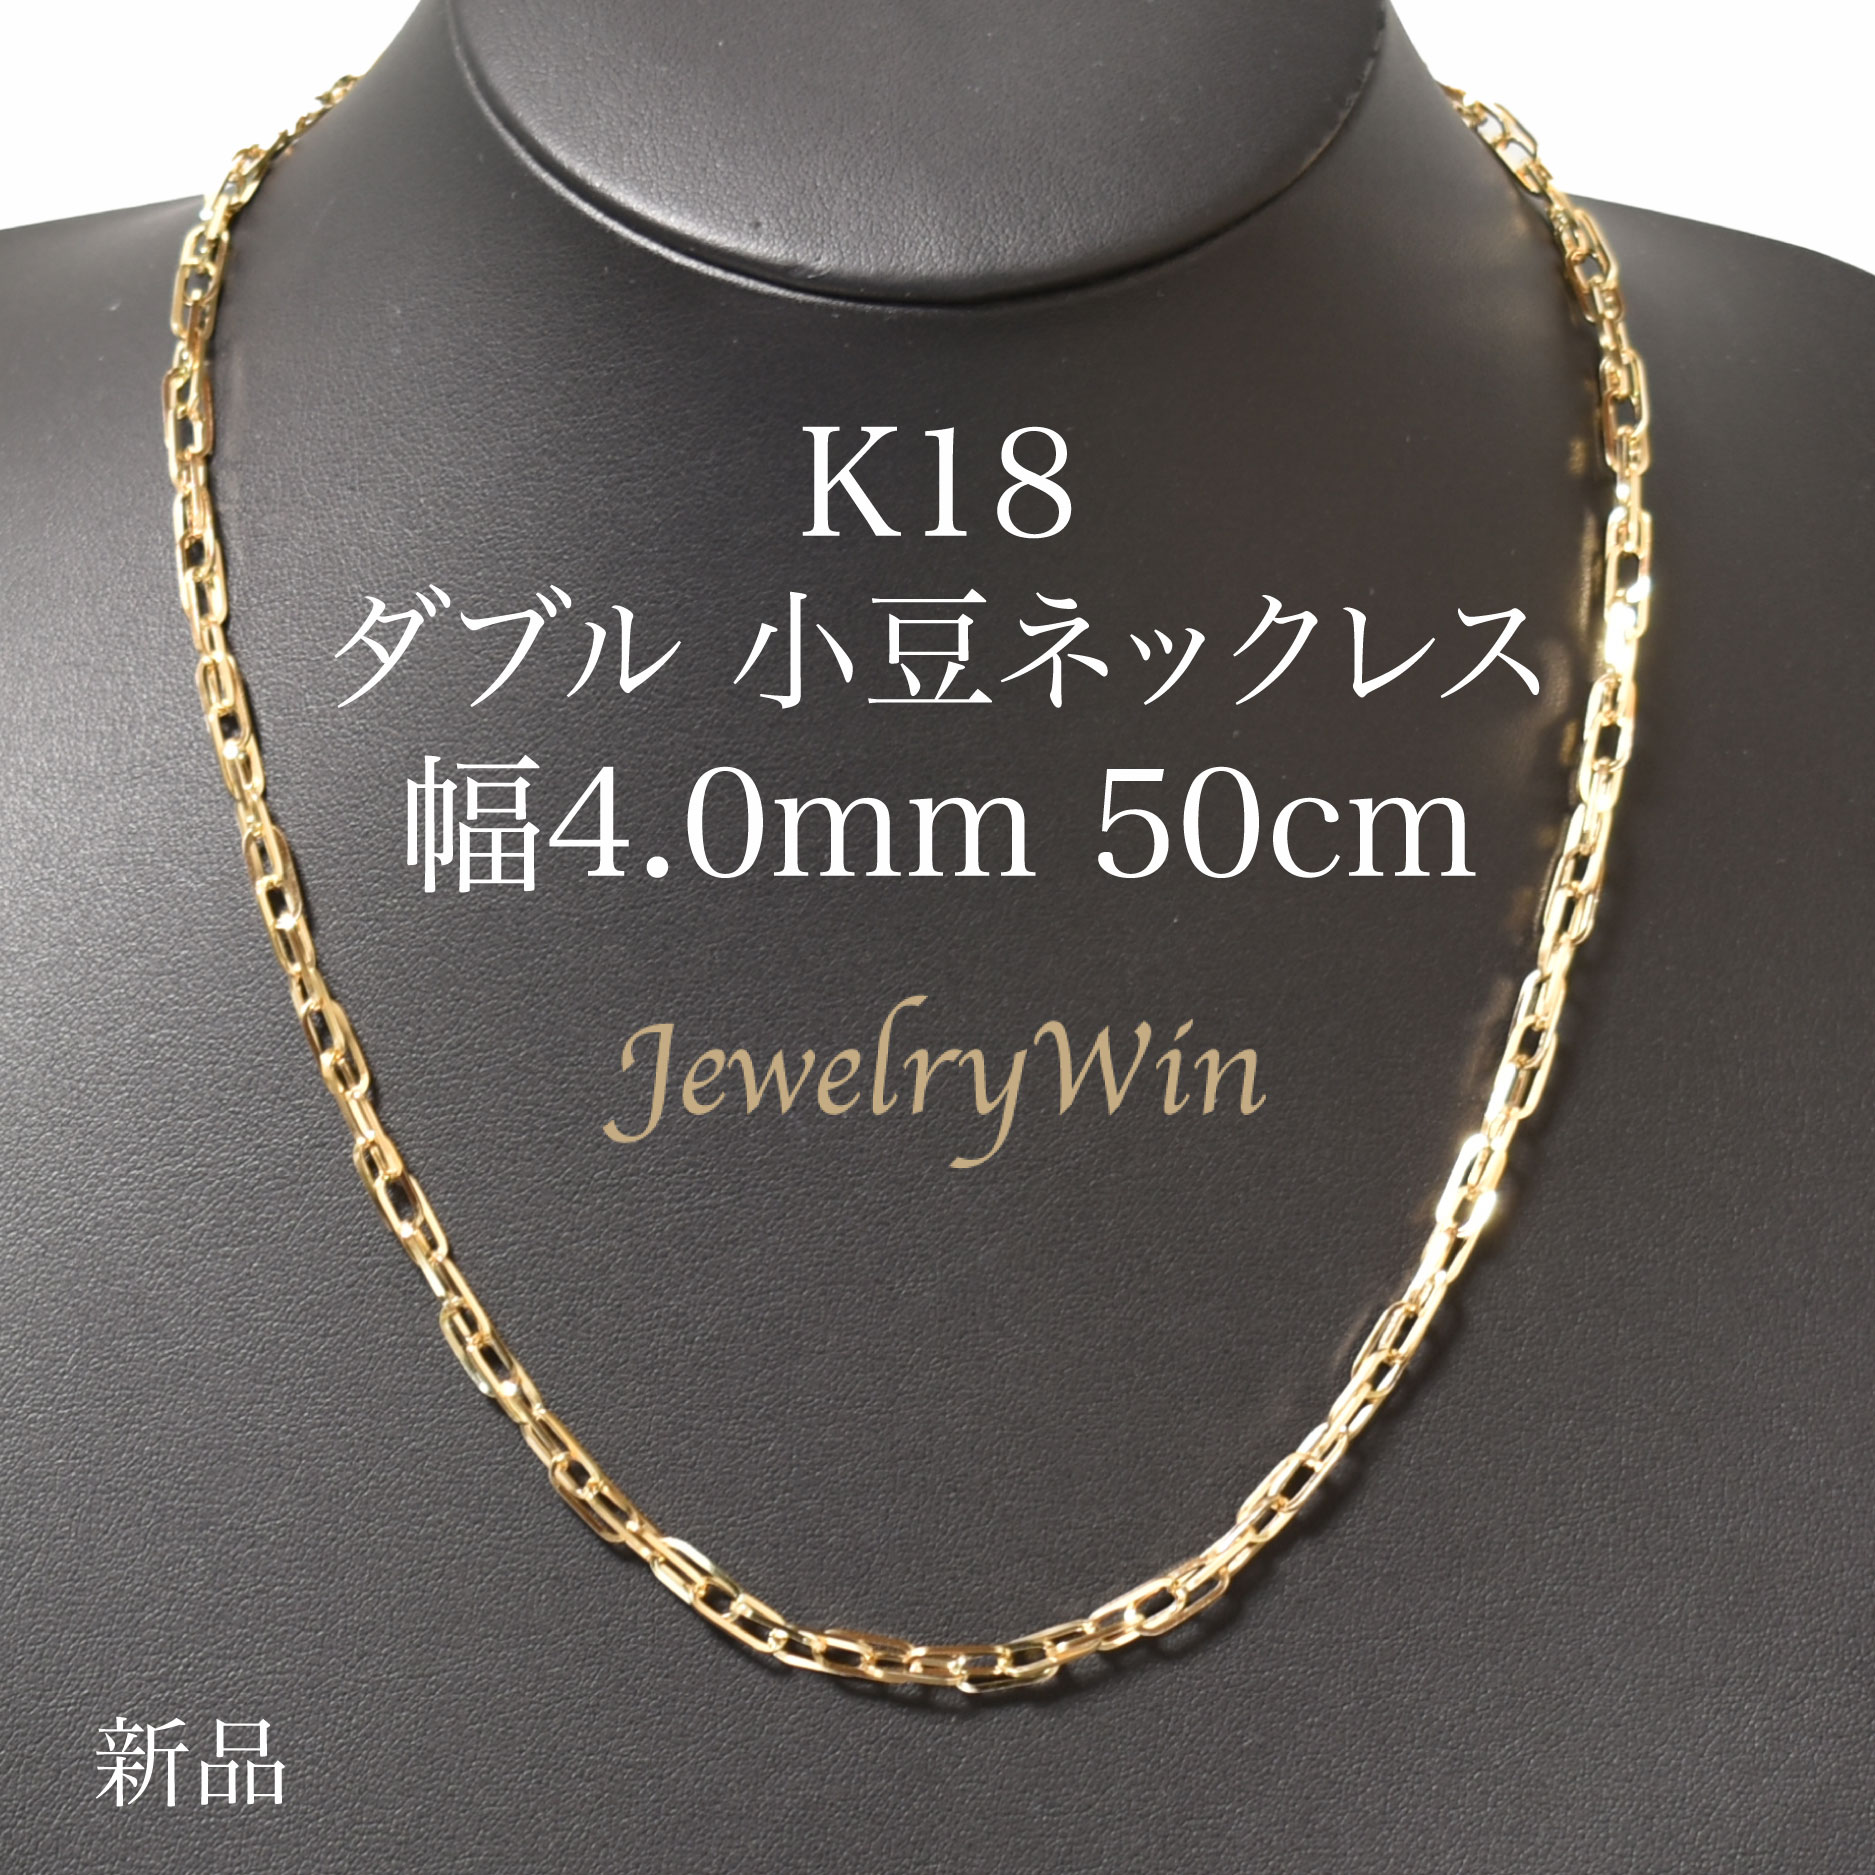 楽天市場】ペンダントトップK18 ダイヤ付 (Type-KD) 中 : Jewelry Win 